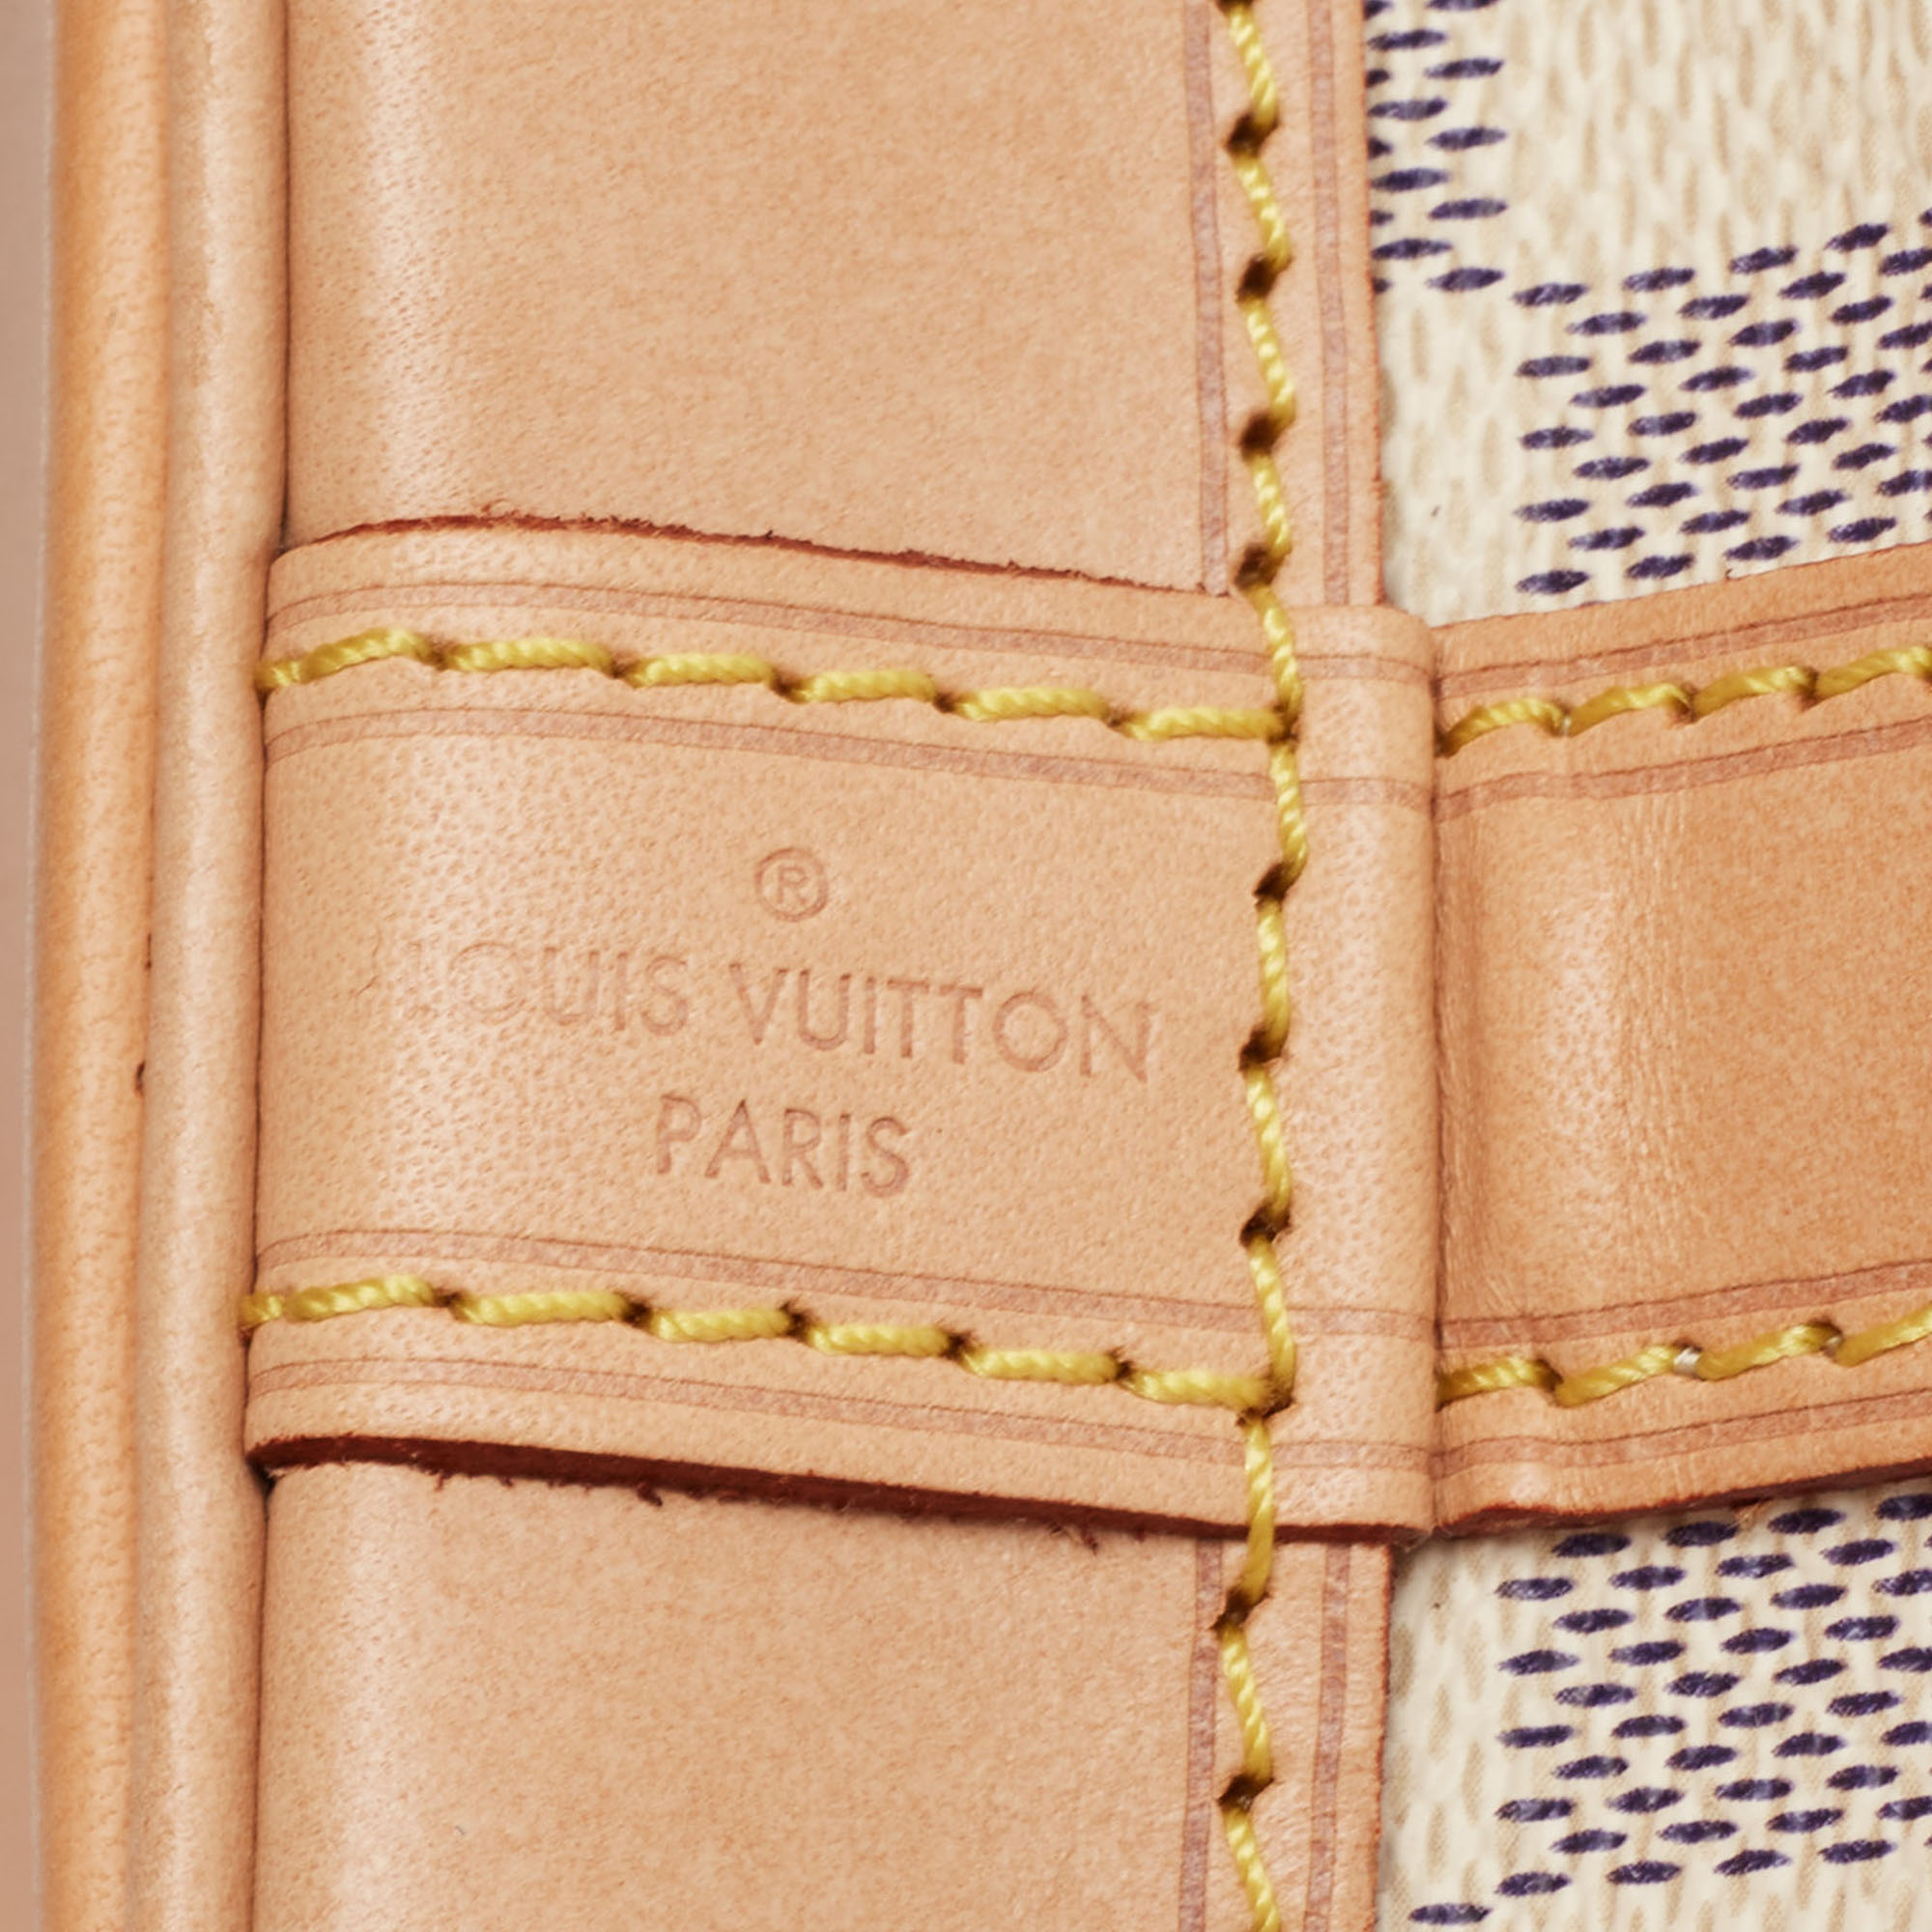 Louis Vuitton Damier Azur Canvas Noe BB Bag